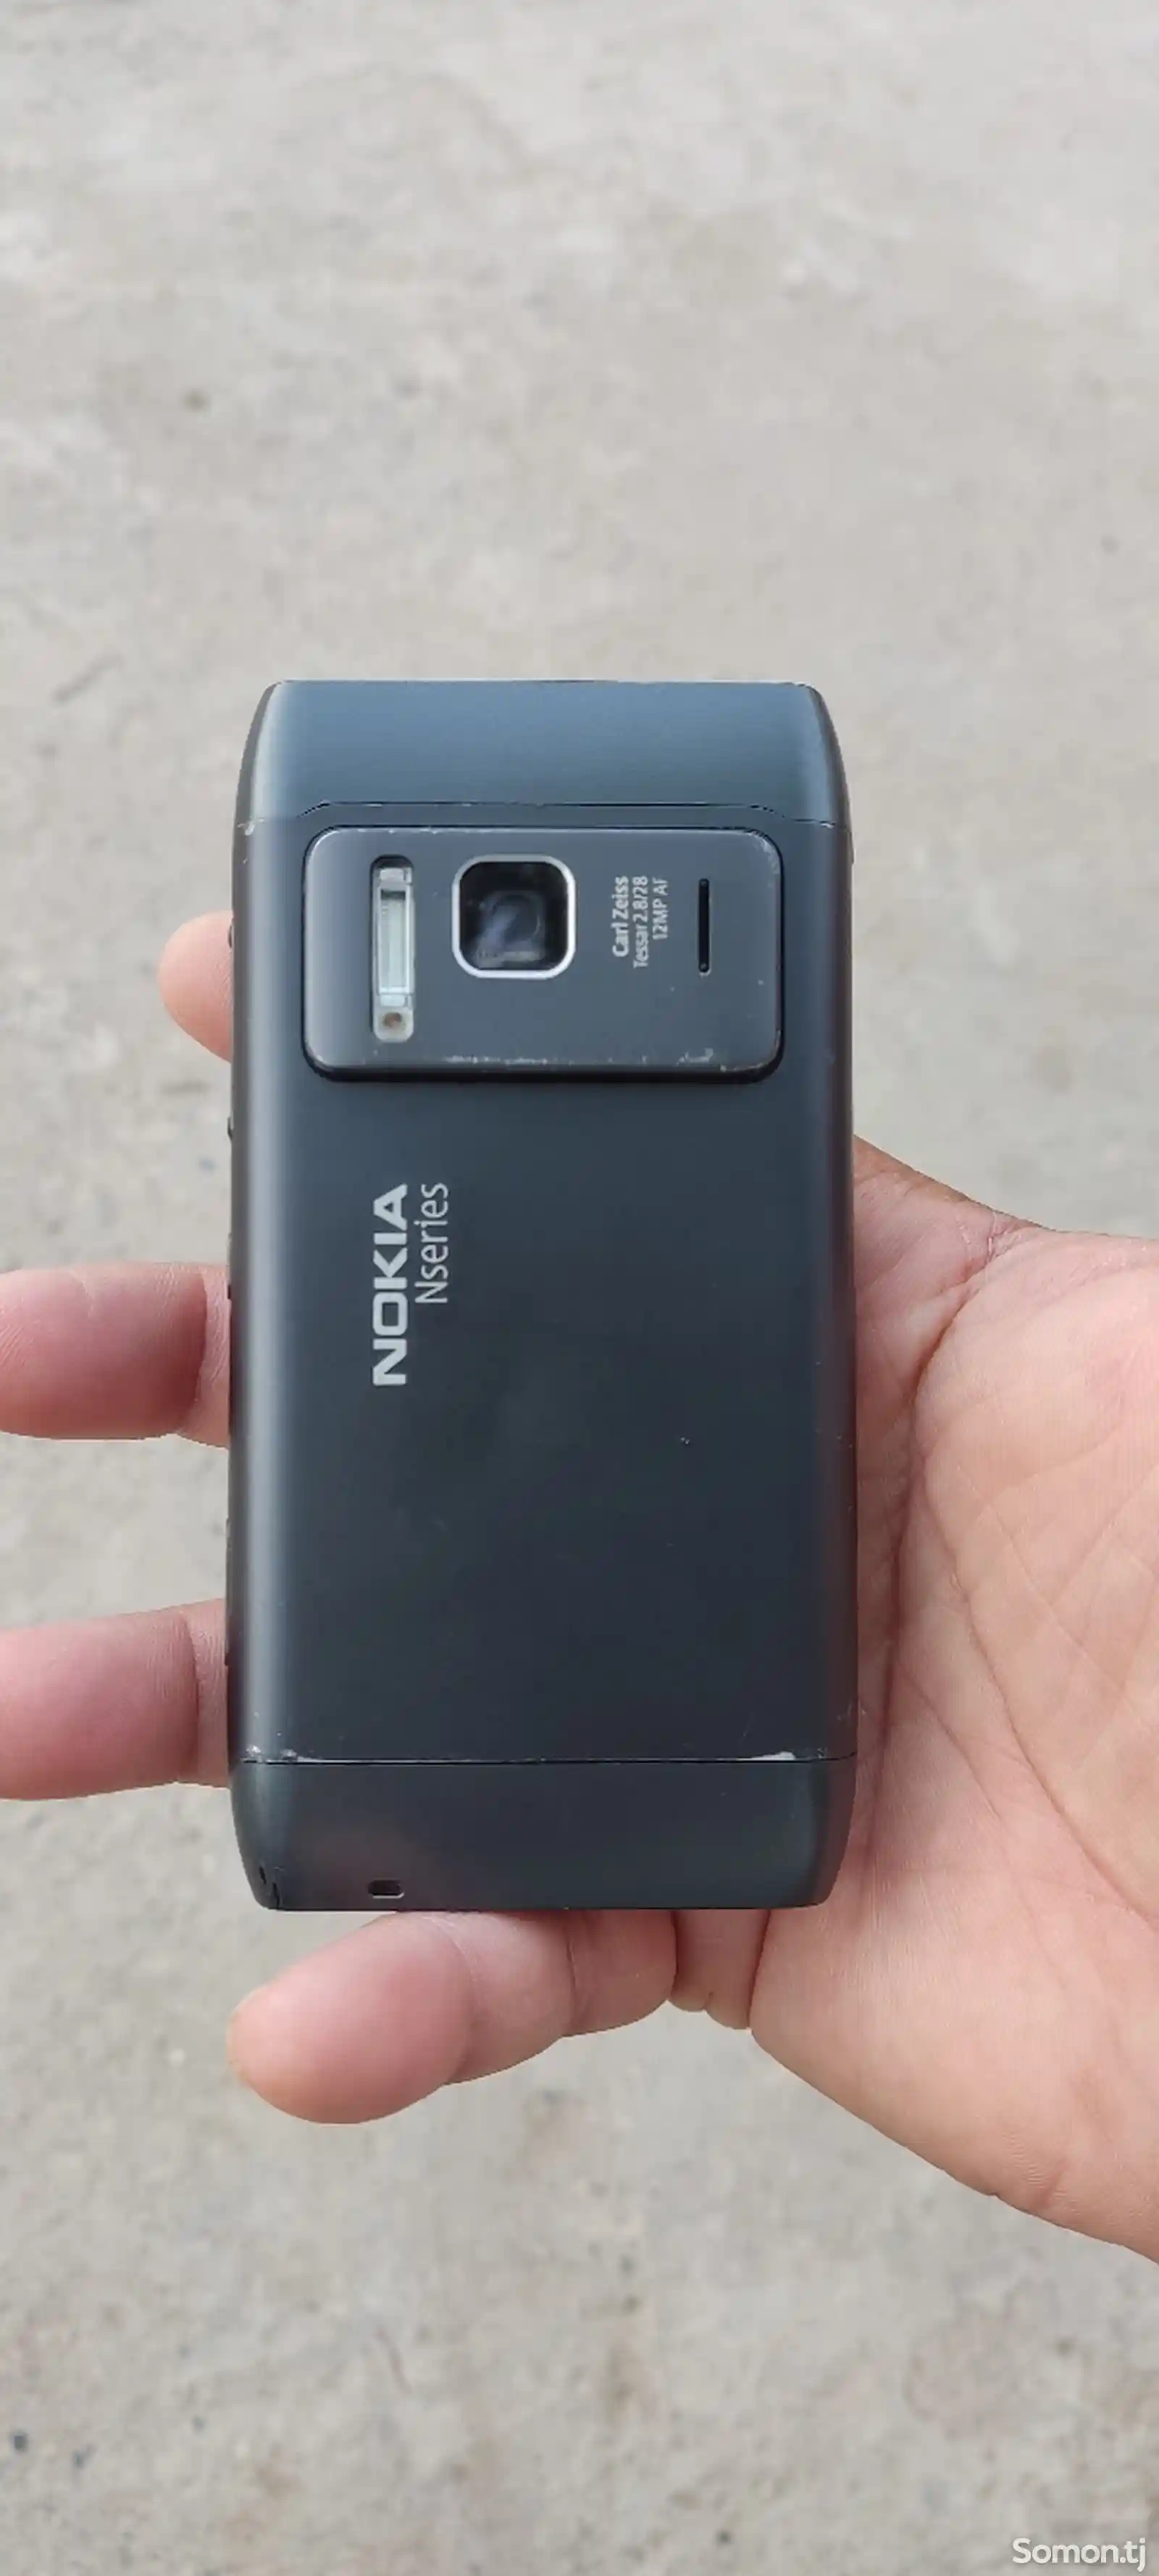 Nokia N8-4